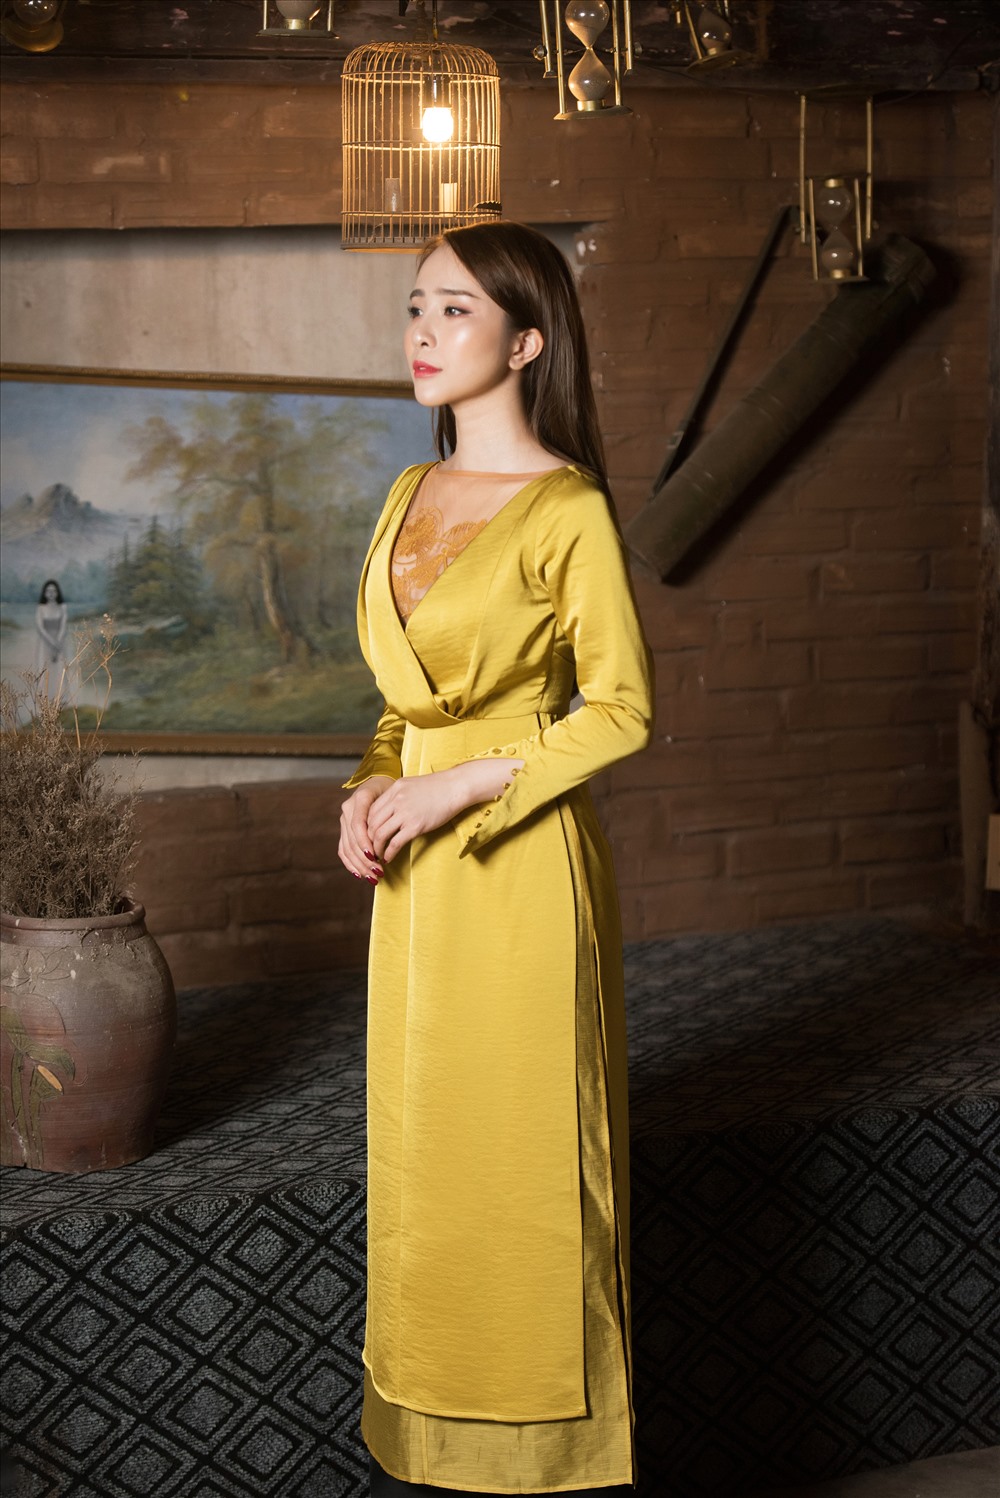 Quỳnh Nga diện những thiết kế áo dài chất liệu nhung phom dáng cổ điển với tà áo dài sang trọng